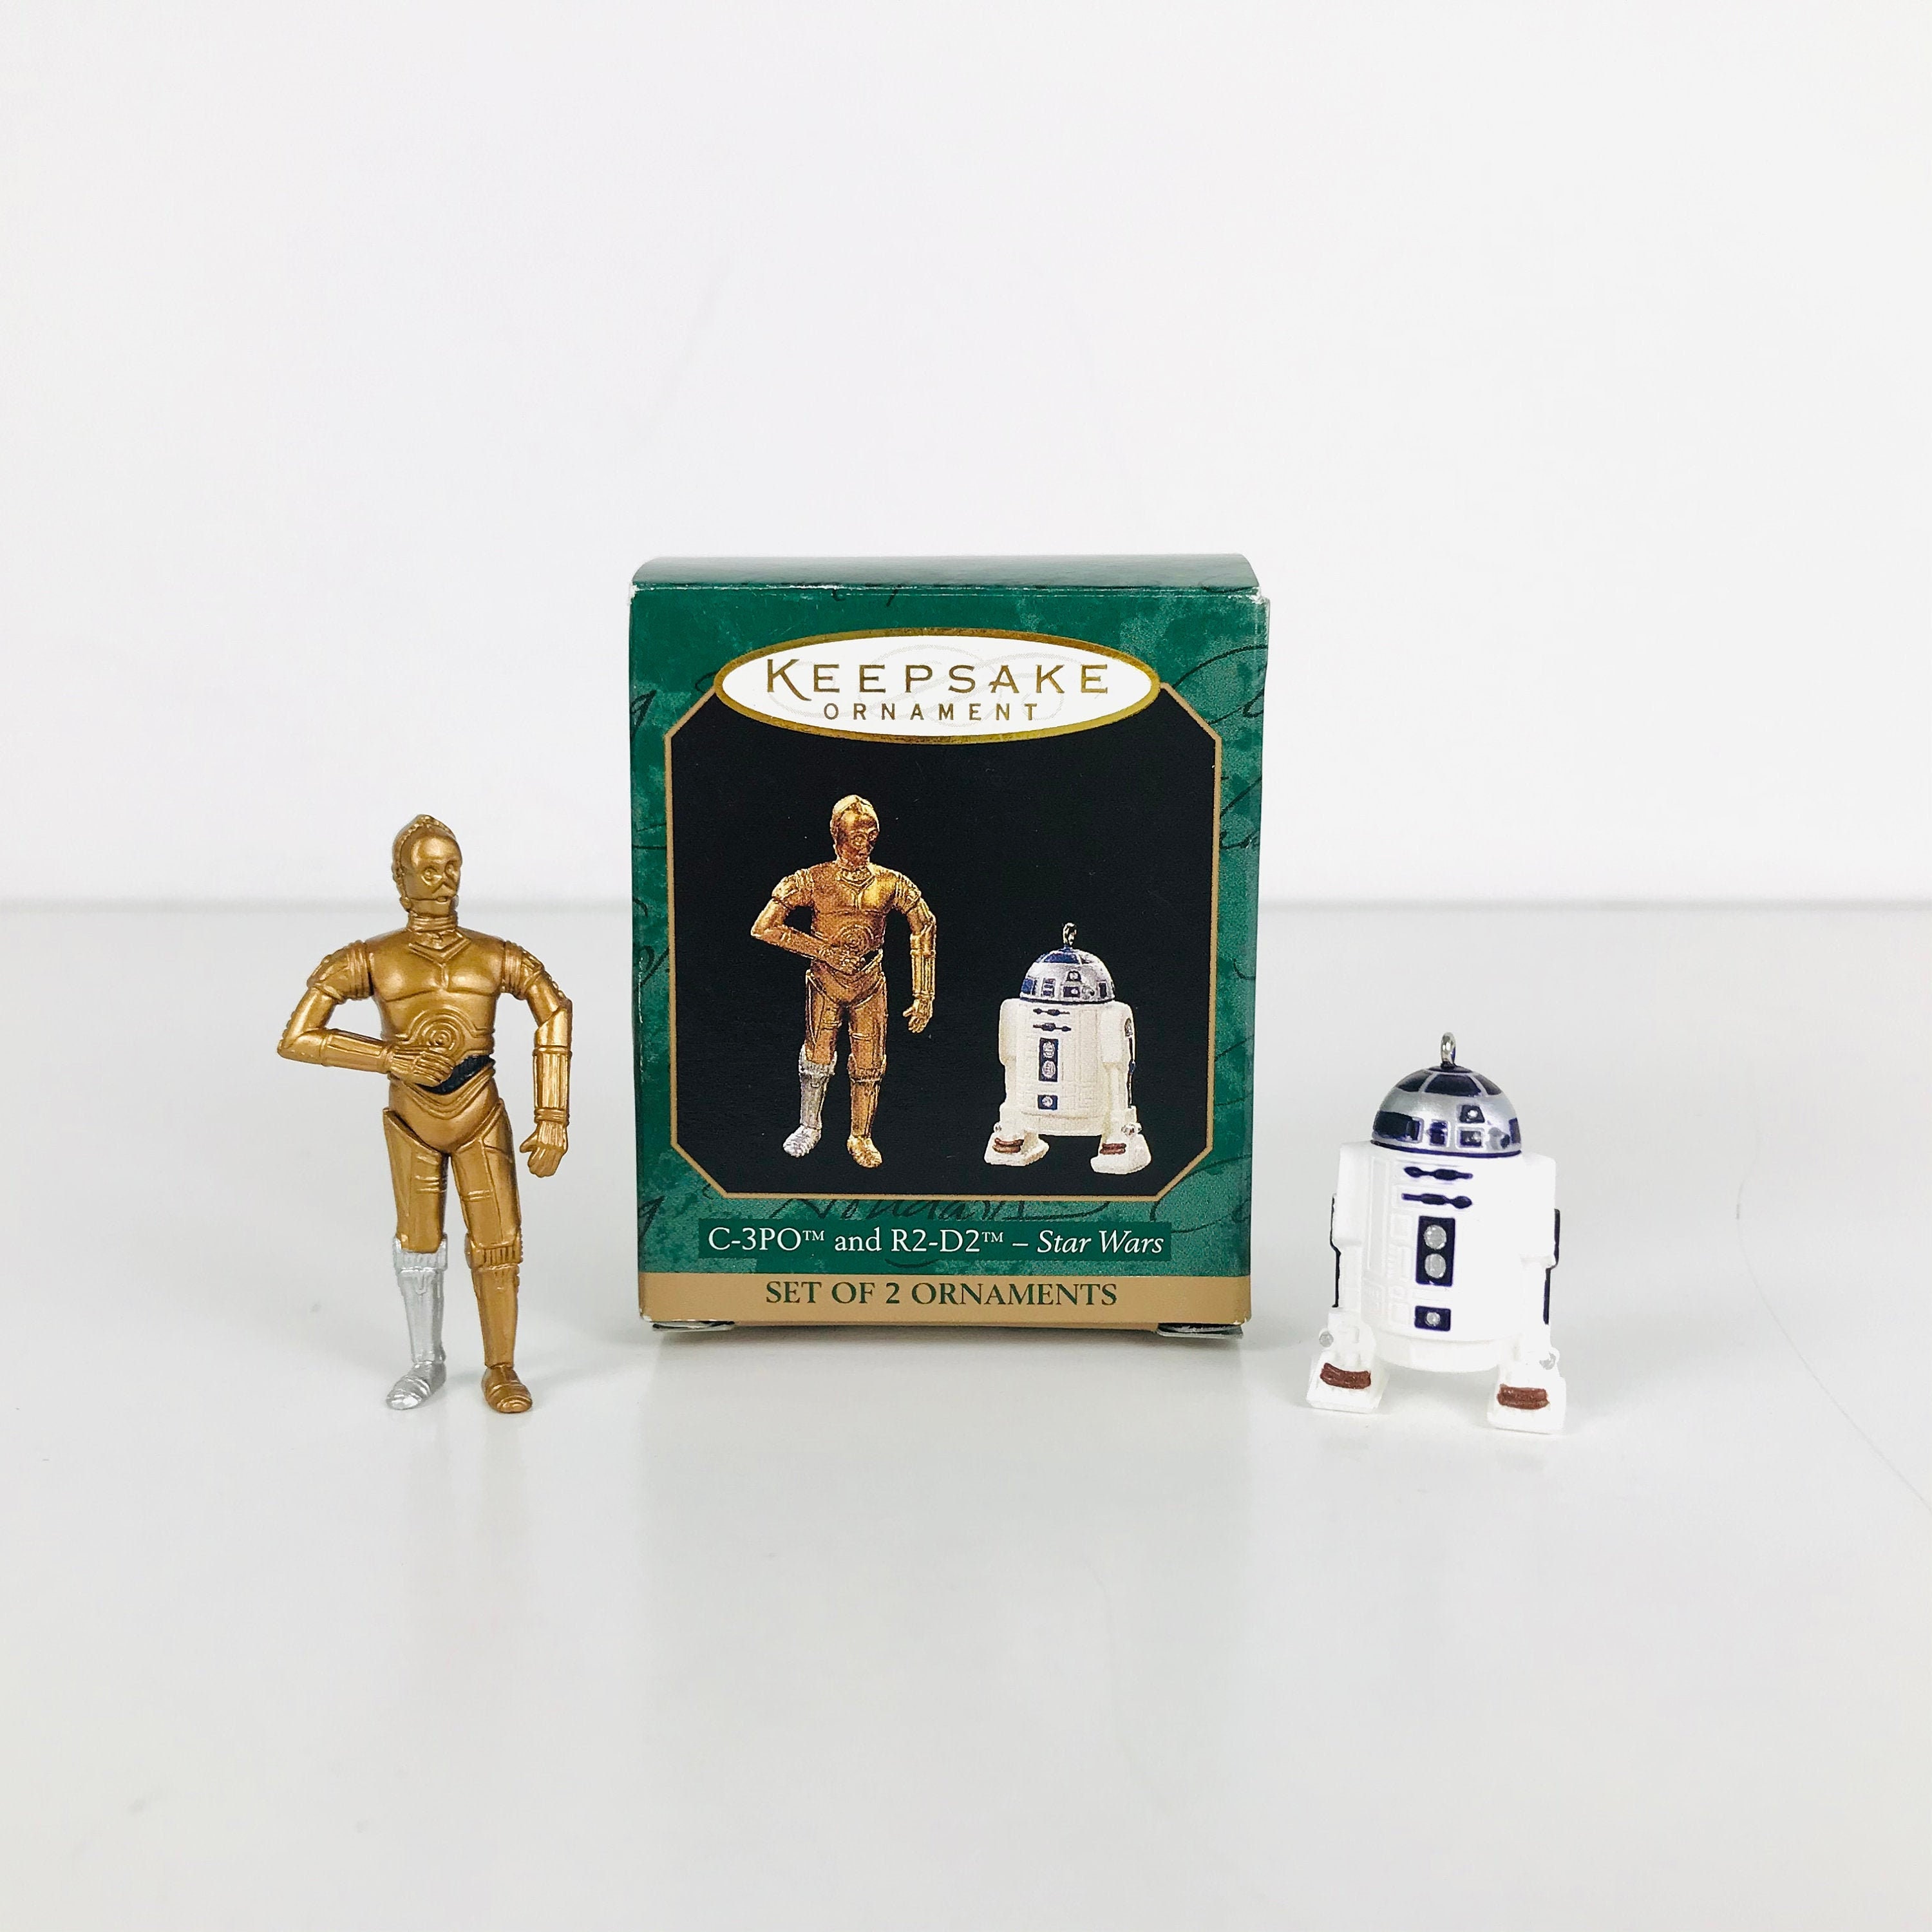 Vintage Miniature Figurine French Feve, Star Wars 2000 Figure, Vessel,  C-3PO Robot, 1.25 Porcelain Dollhouse Décor, Cake Topper Decoration 